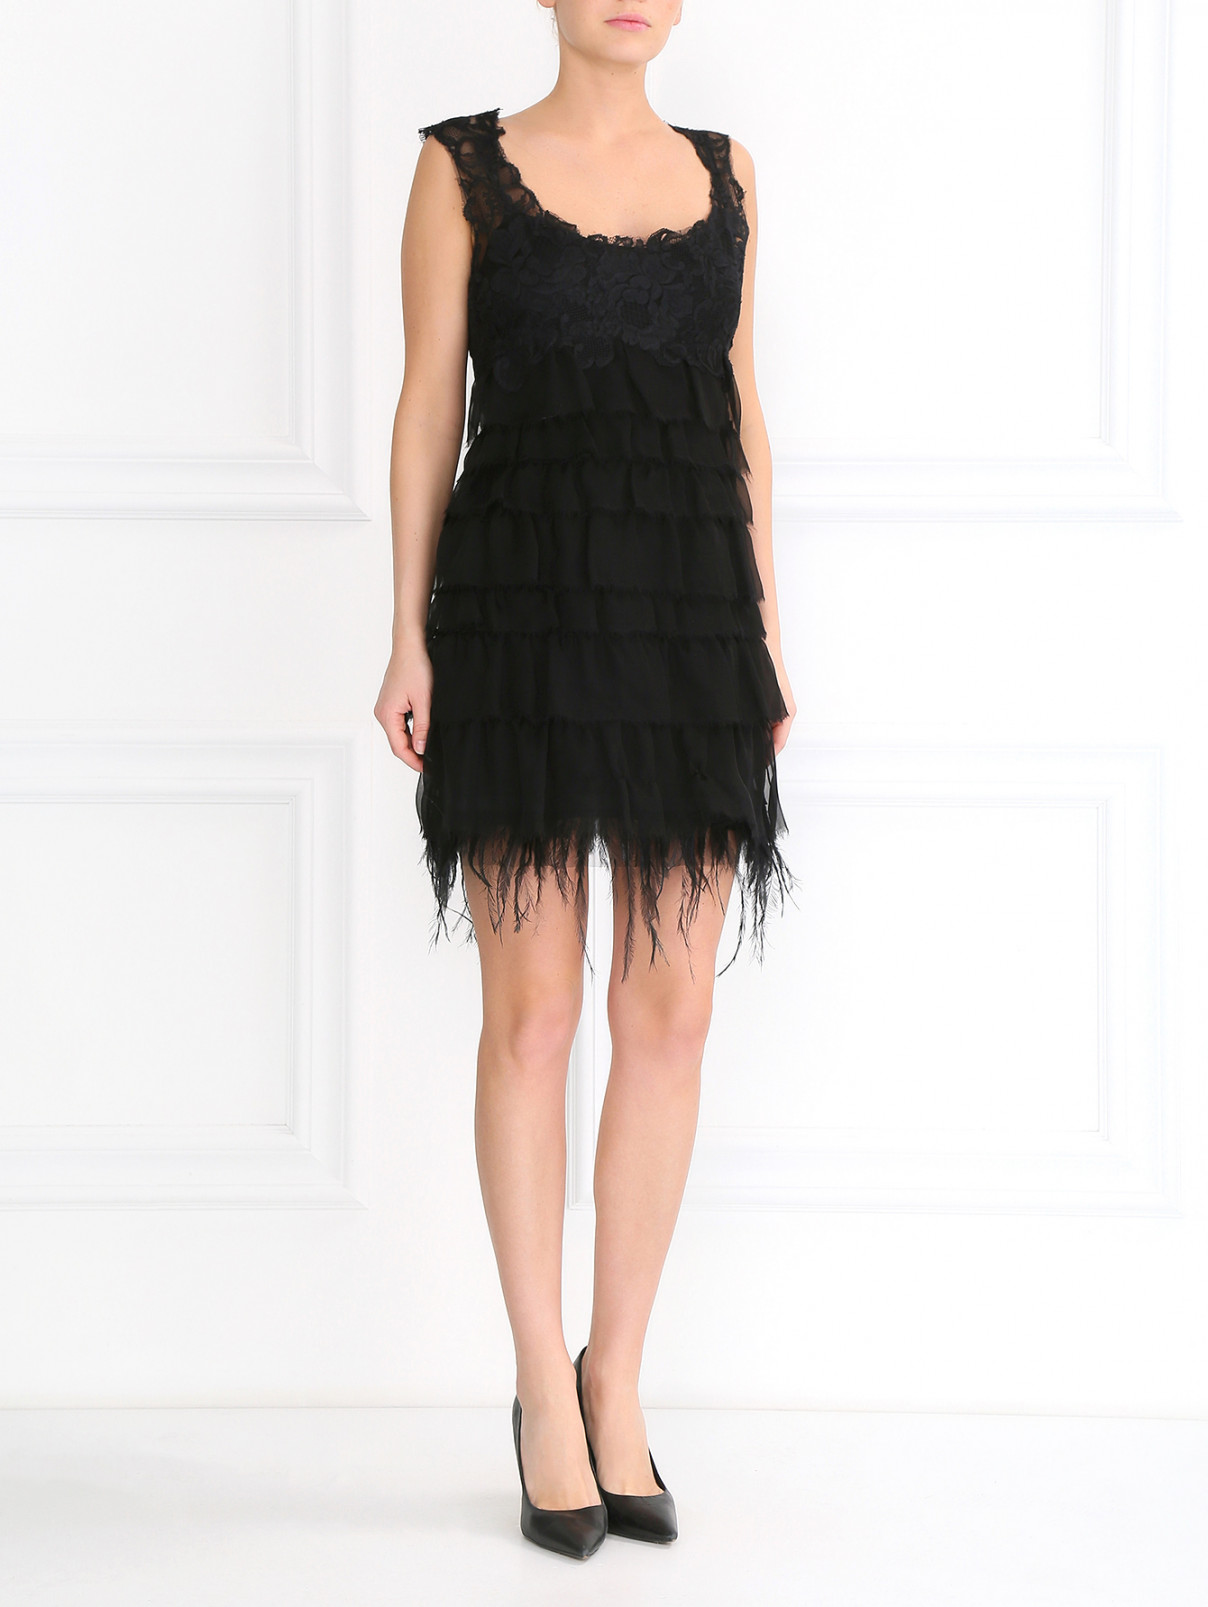 Кружевное платье-мини из шелка с отделкой из перьев Alberta Ferretti  –  Модель Общий вид  – Цвет:  Черный